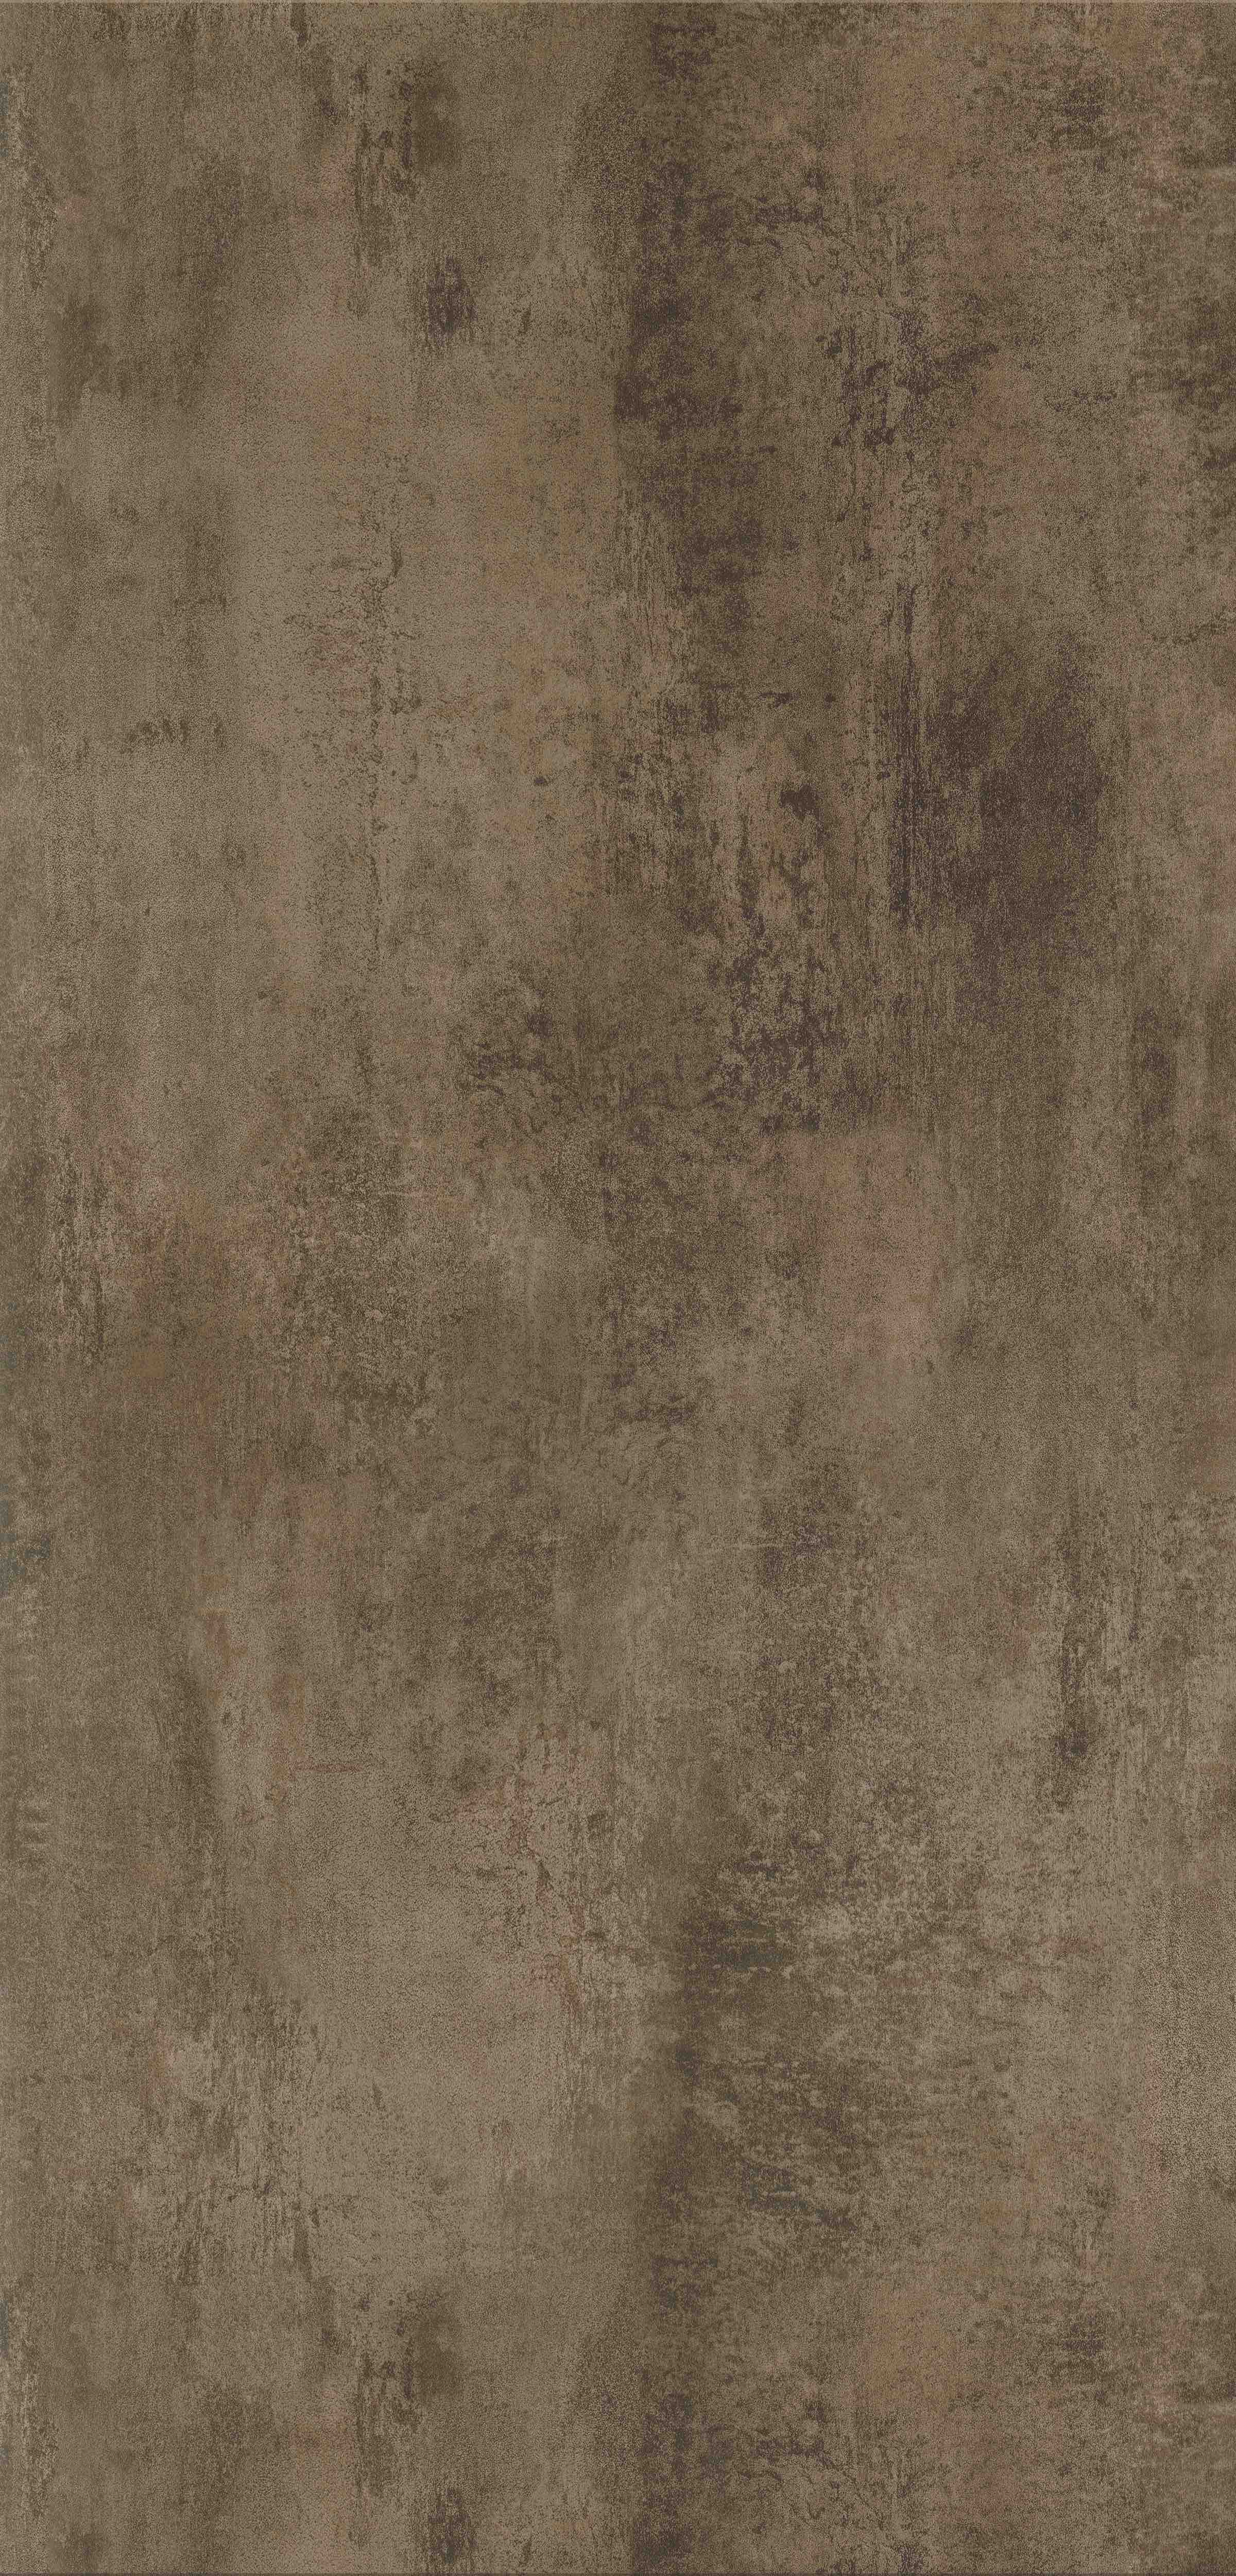 Rappórt | Copper Metalstone, 2970 | Paragon Carpet Tiles | Commercial Carpet Tiles